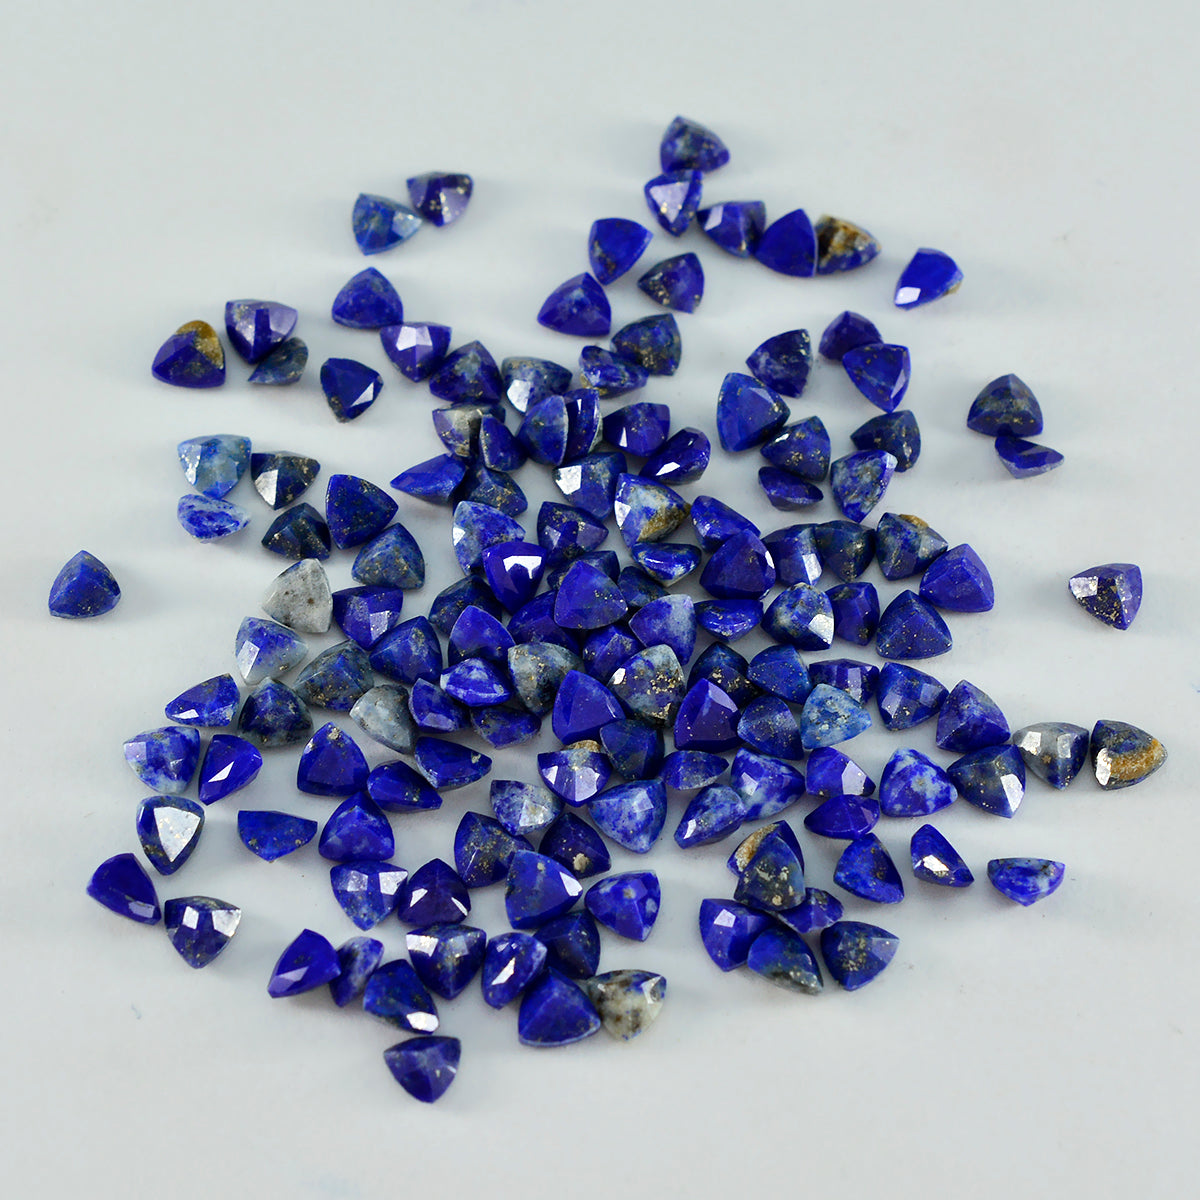 Riyogems 1PC Echte Blauwe Lapis Lazuli Facet 4x4 mm Biljoen Vorm zoete Kwaliteit Steen